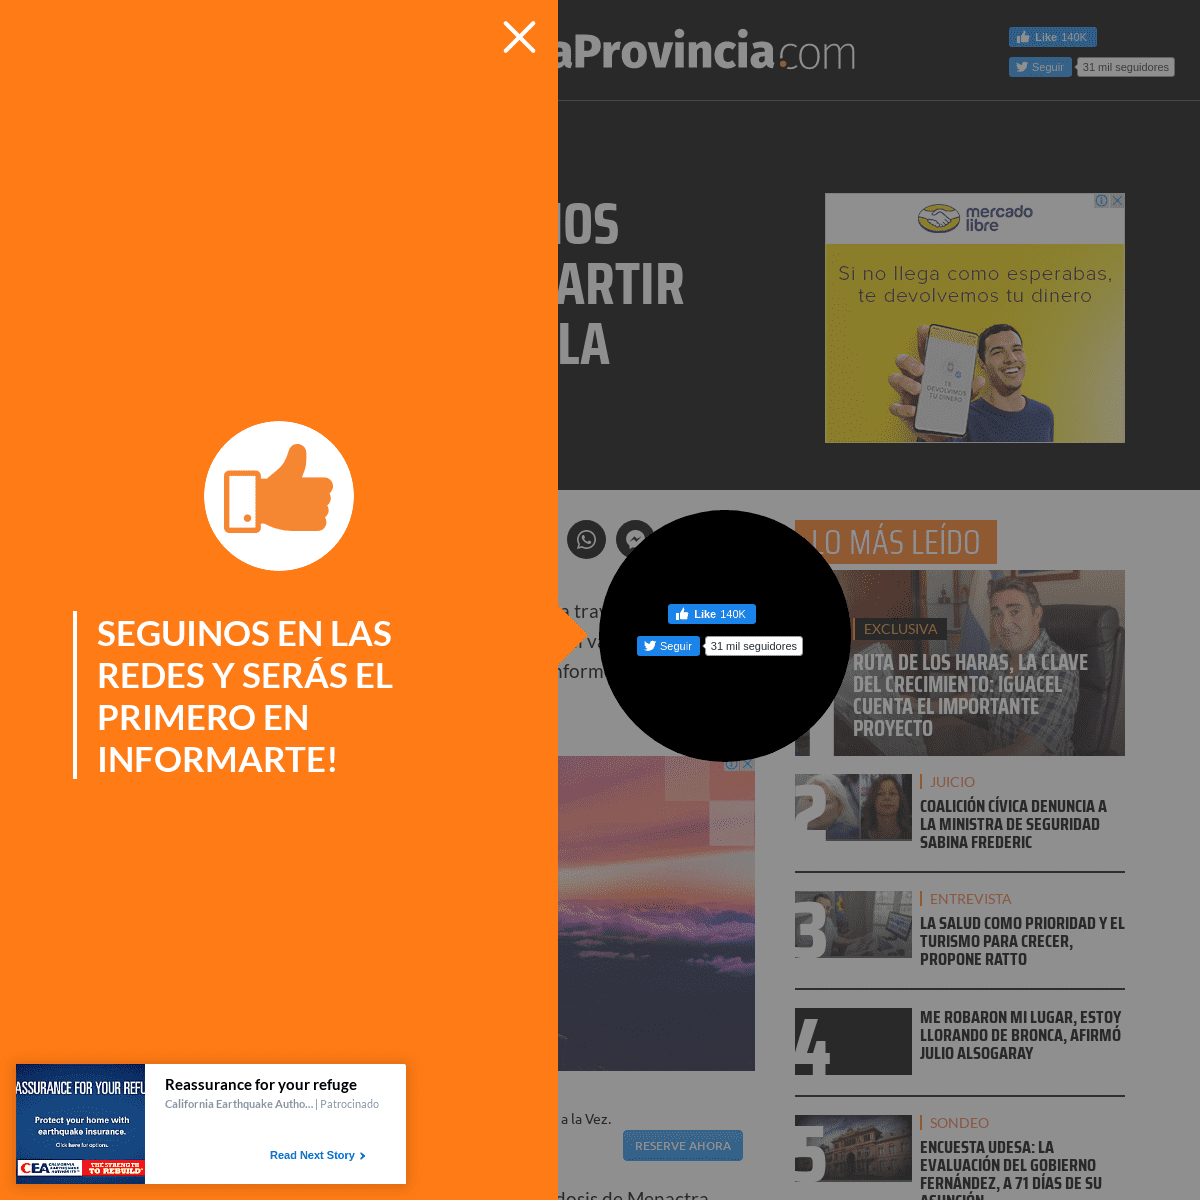 A complete backup of www.grupolaprovincia.com/sociedad/la-provincia-de-buenos-aires-comenzo-a-repartir-las-vacunas-contra-la-men